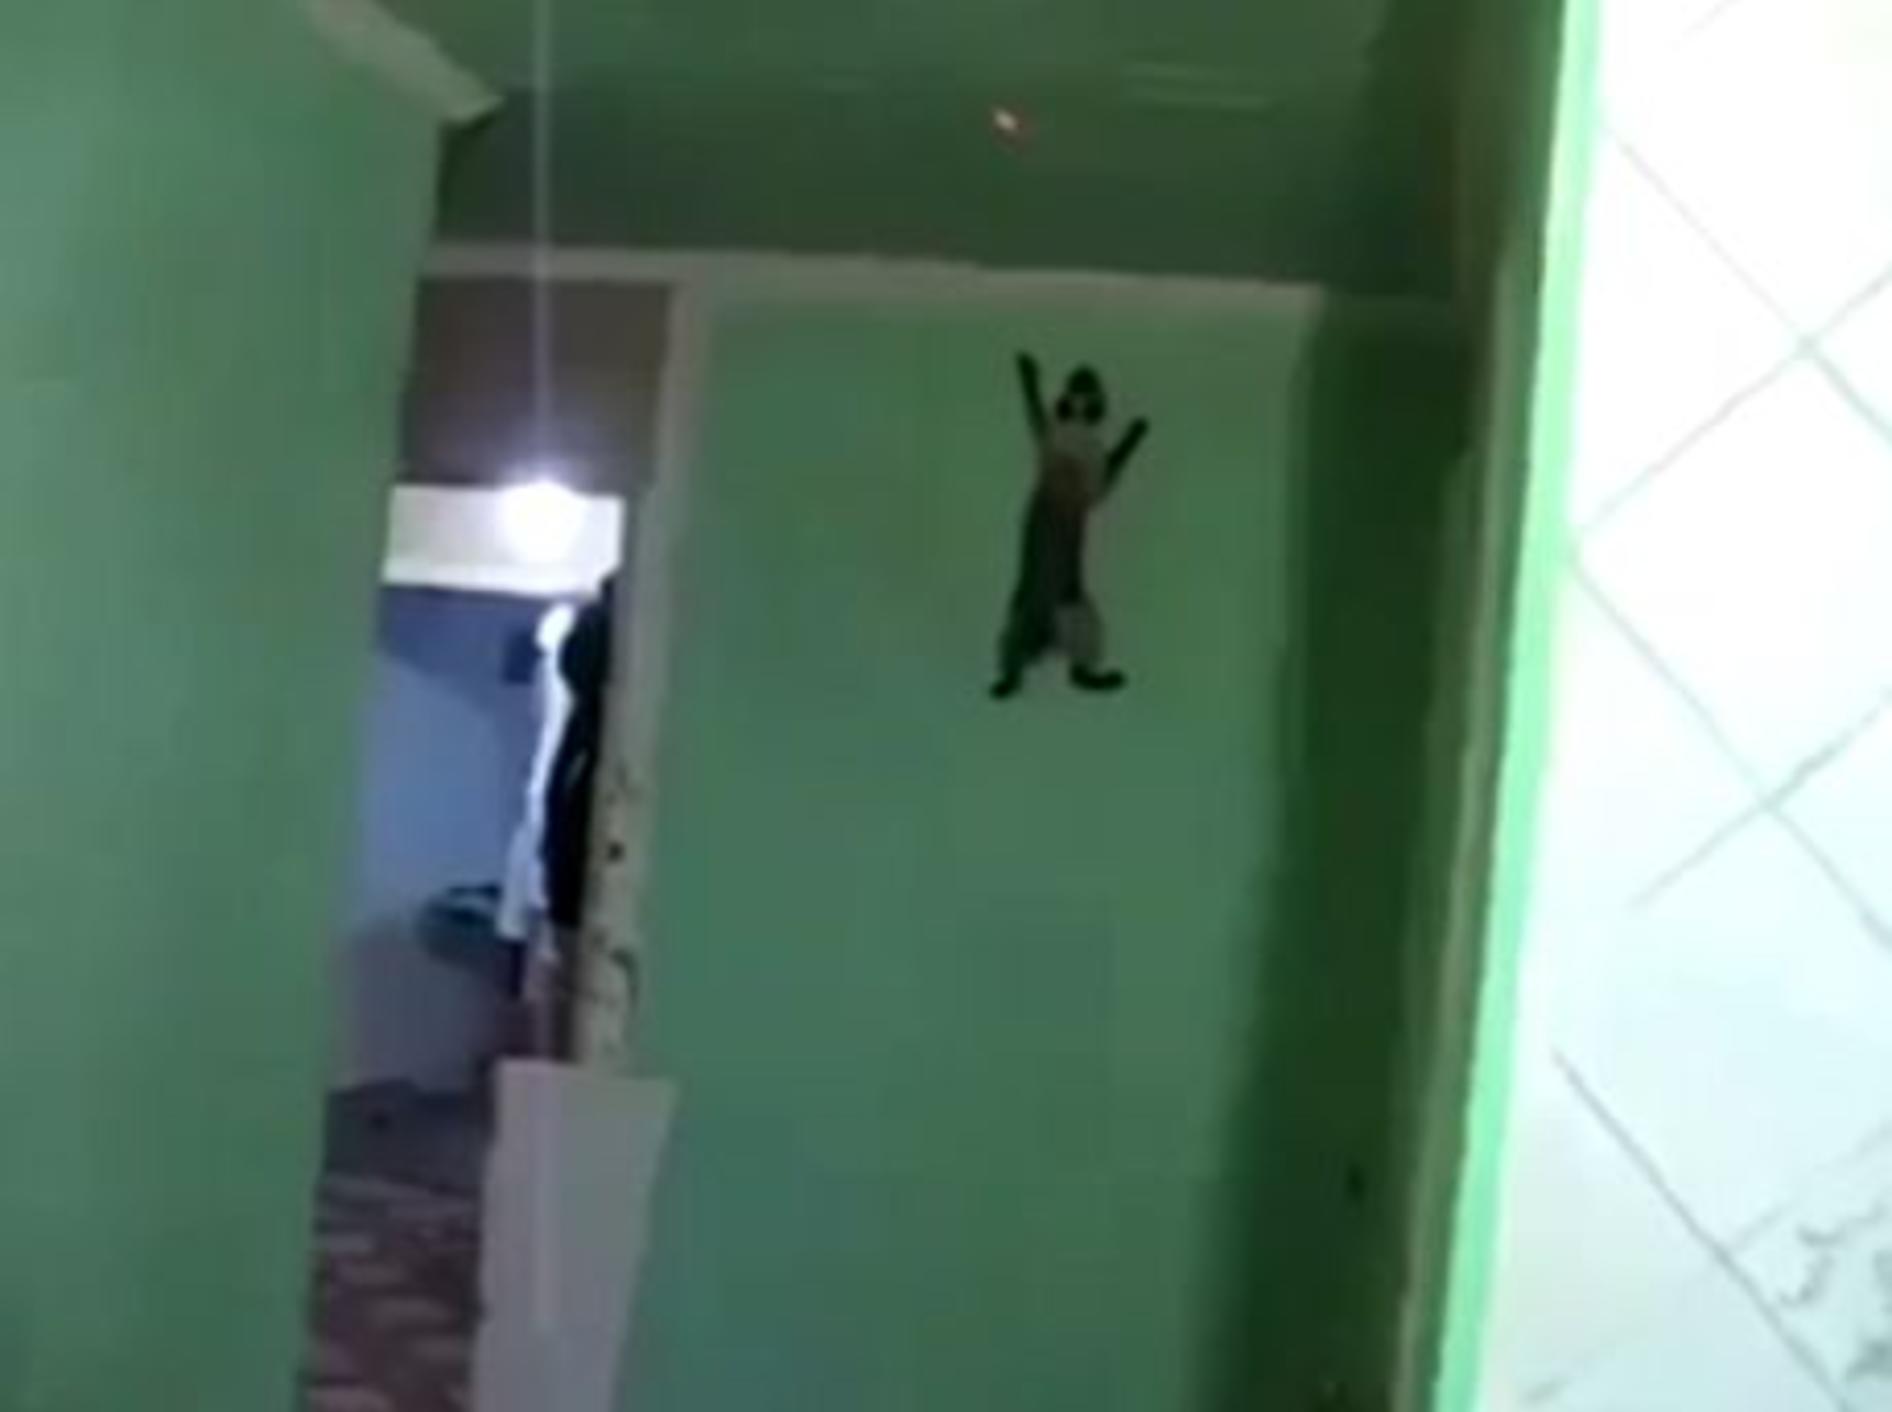 Spiderman-Katze klettert die Wände hoch – Bild: Youtube / Lyncia De Mulder